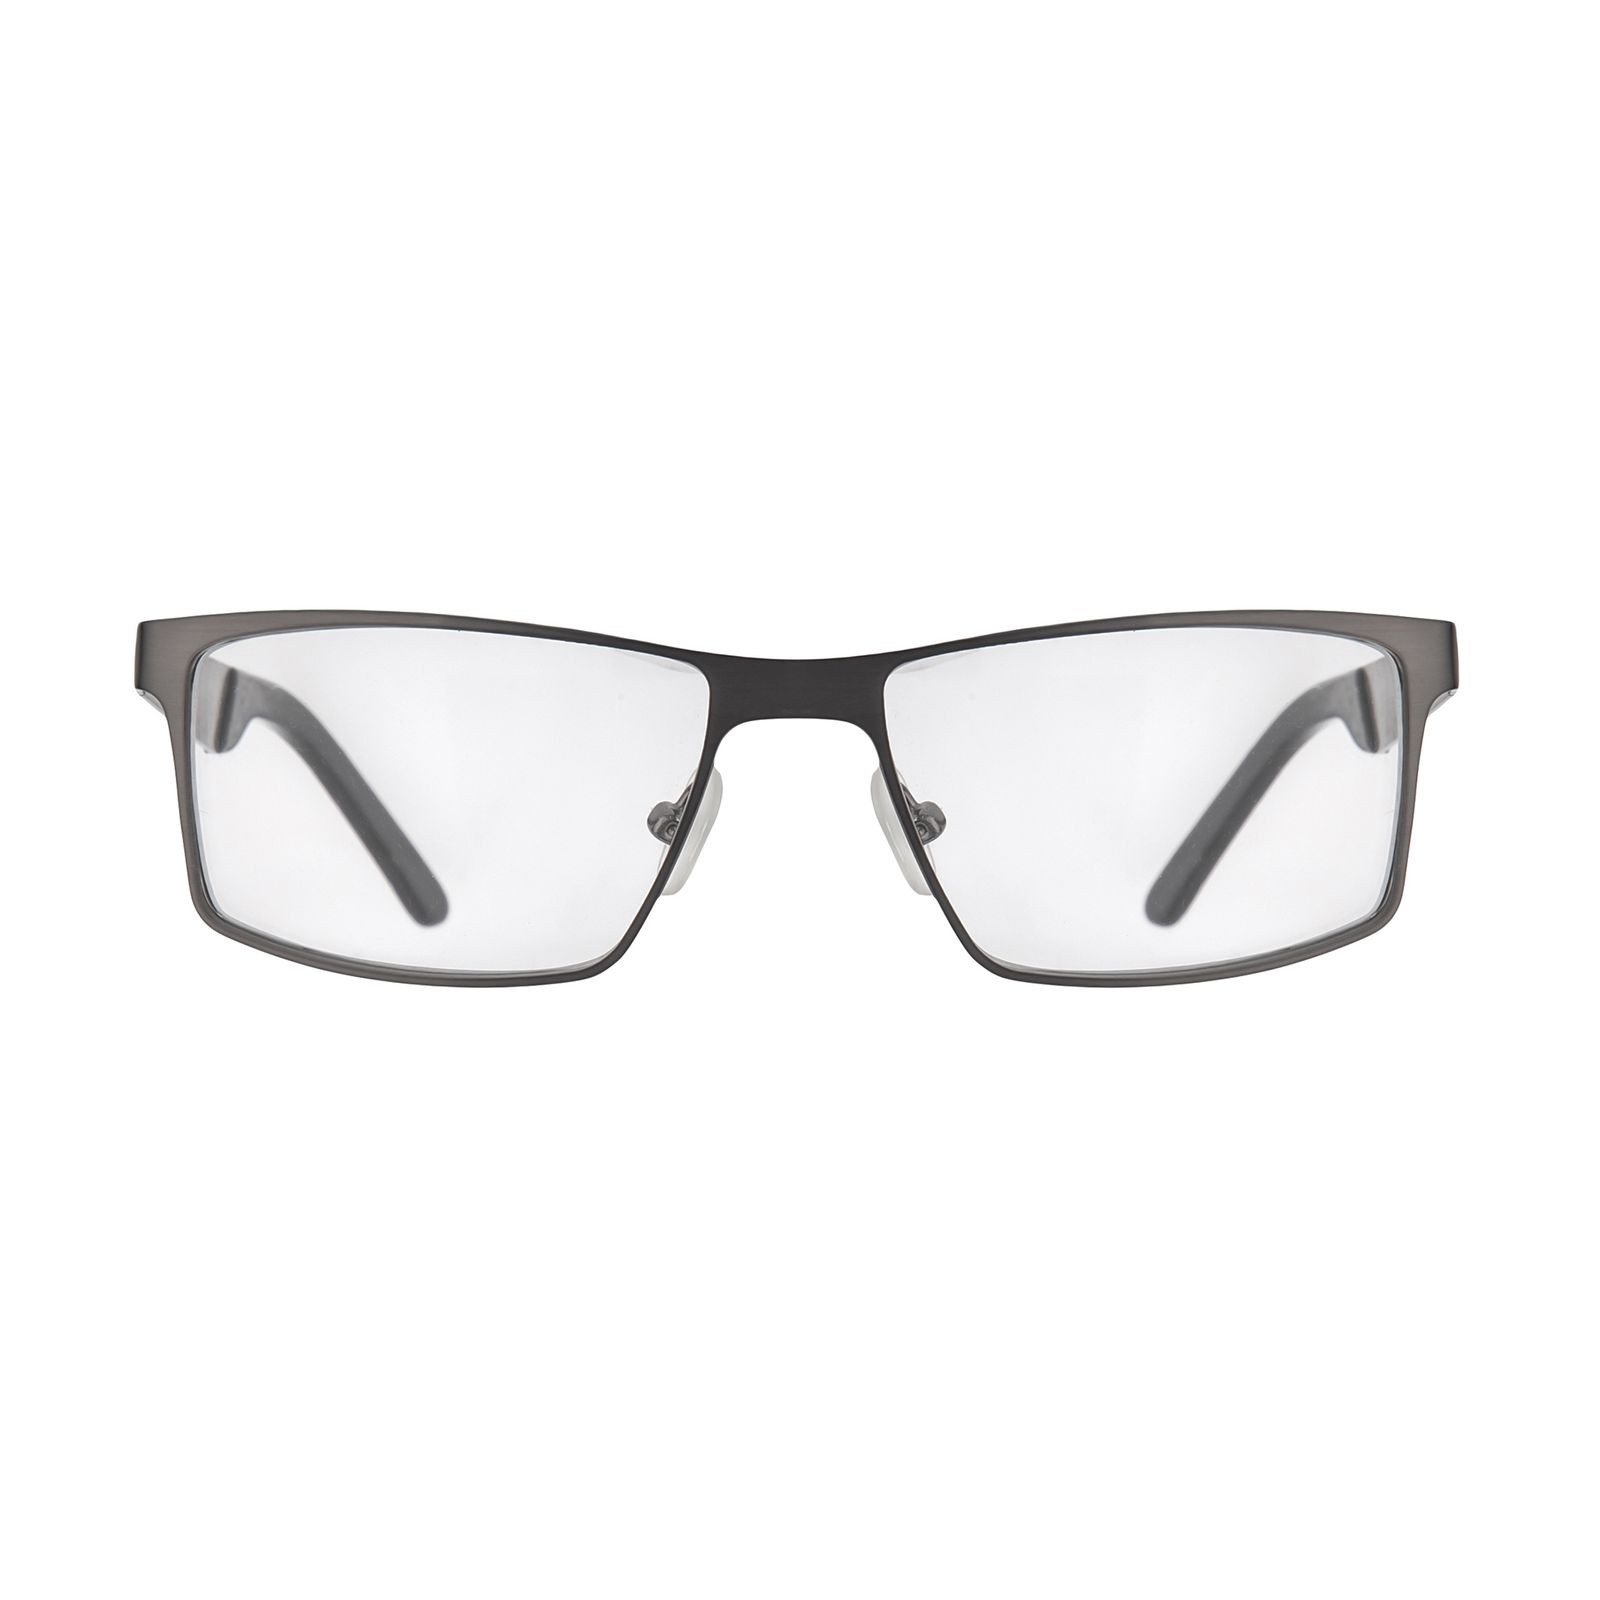 فریم عینک طبی هوگو باس مدل 82008 -  - 1